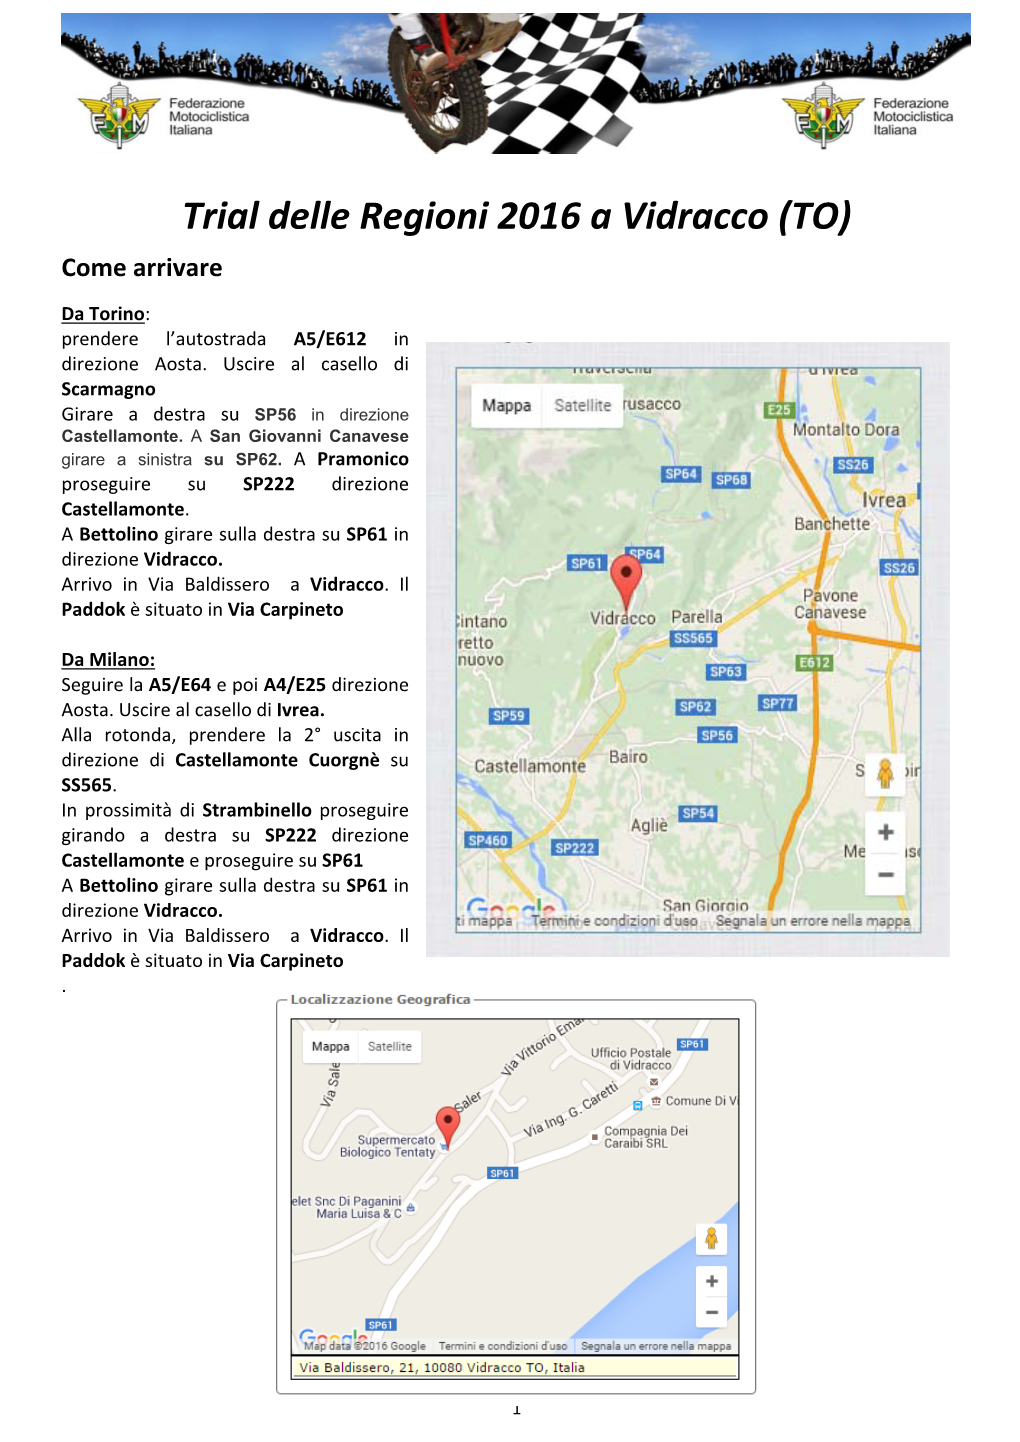 Trial Delle Regioni 2016 a Vidracco (TO) Come Arrivare